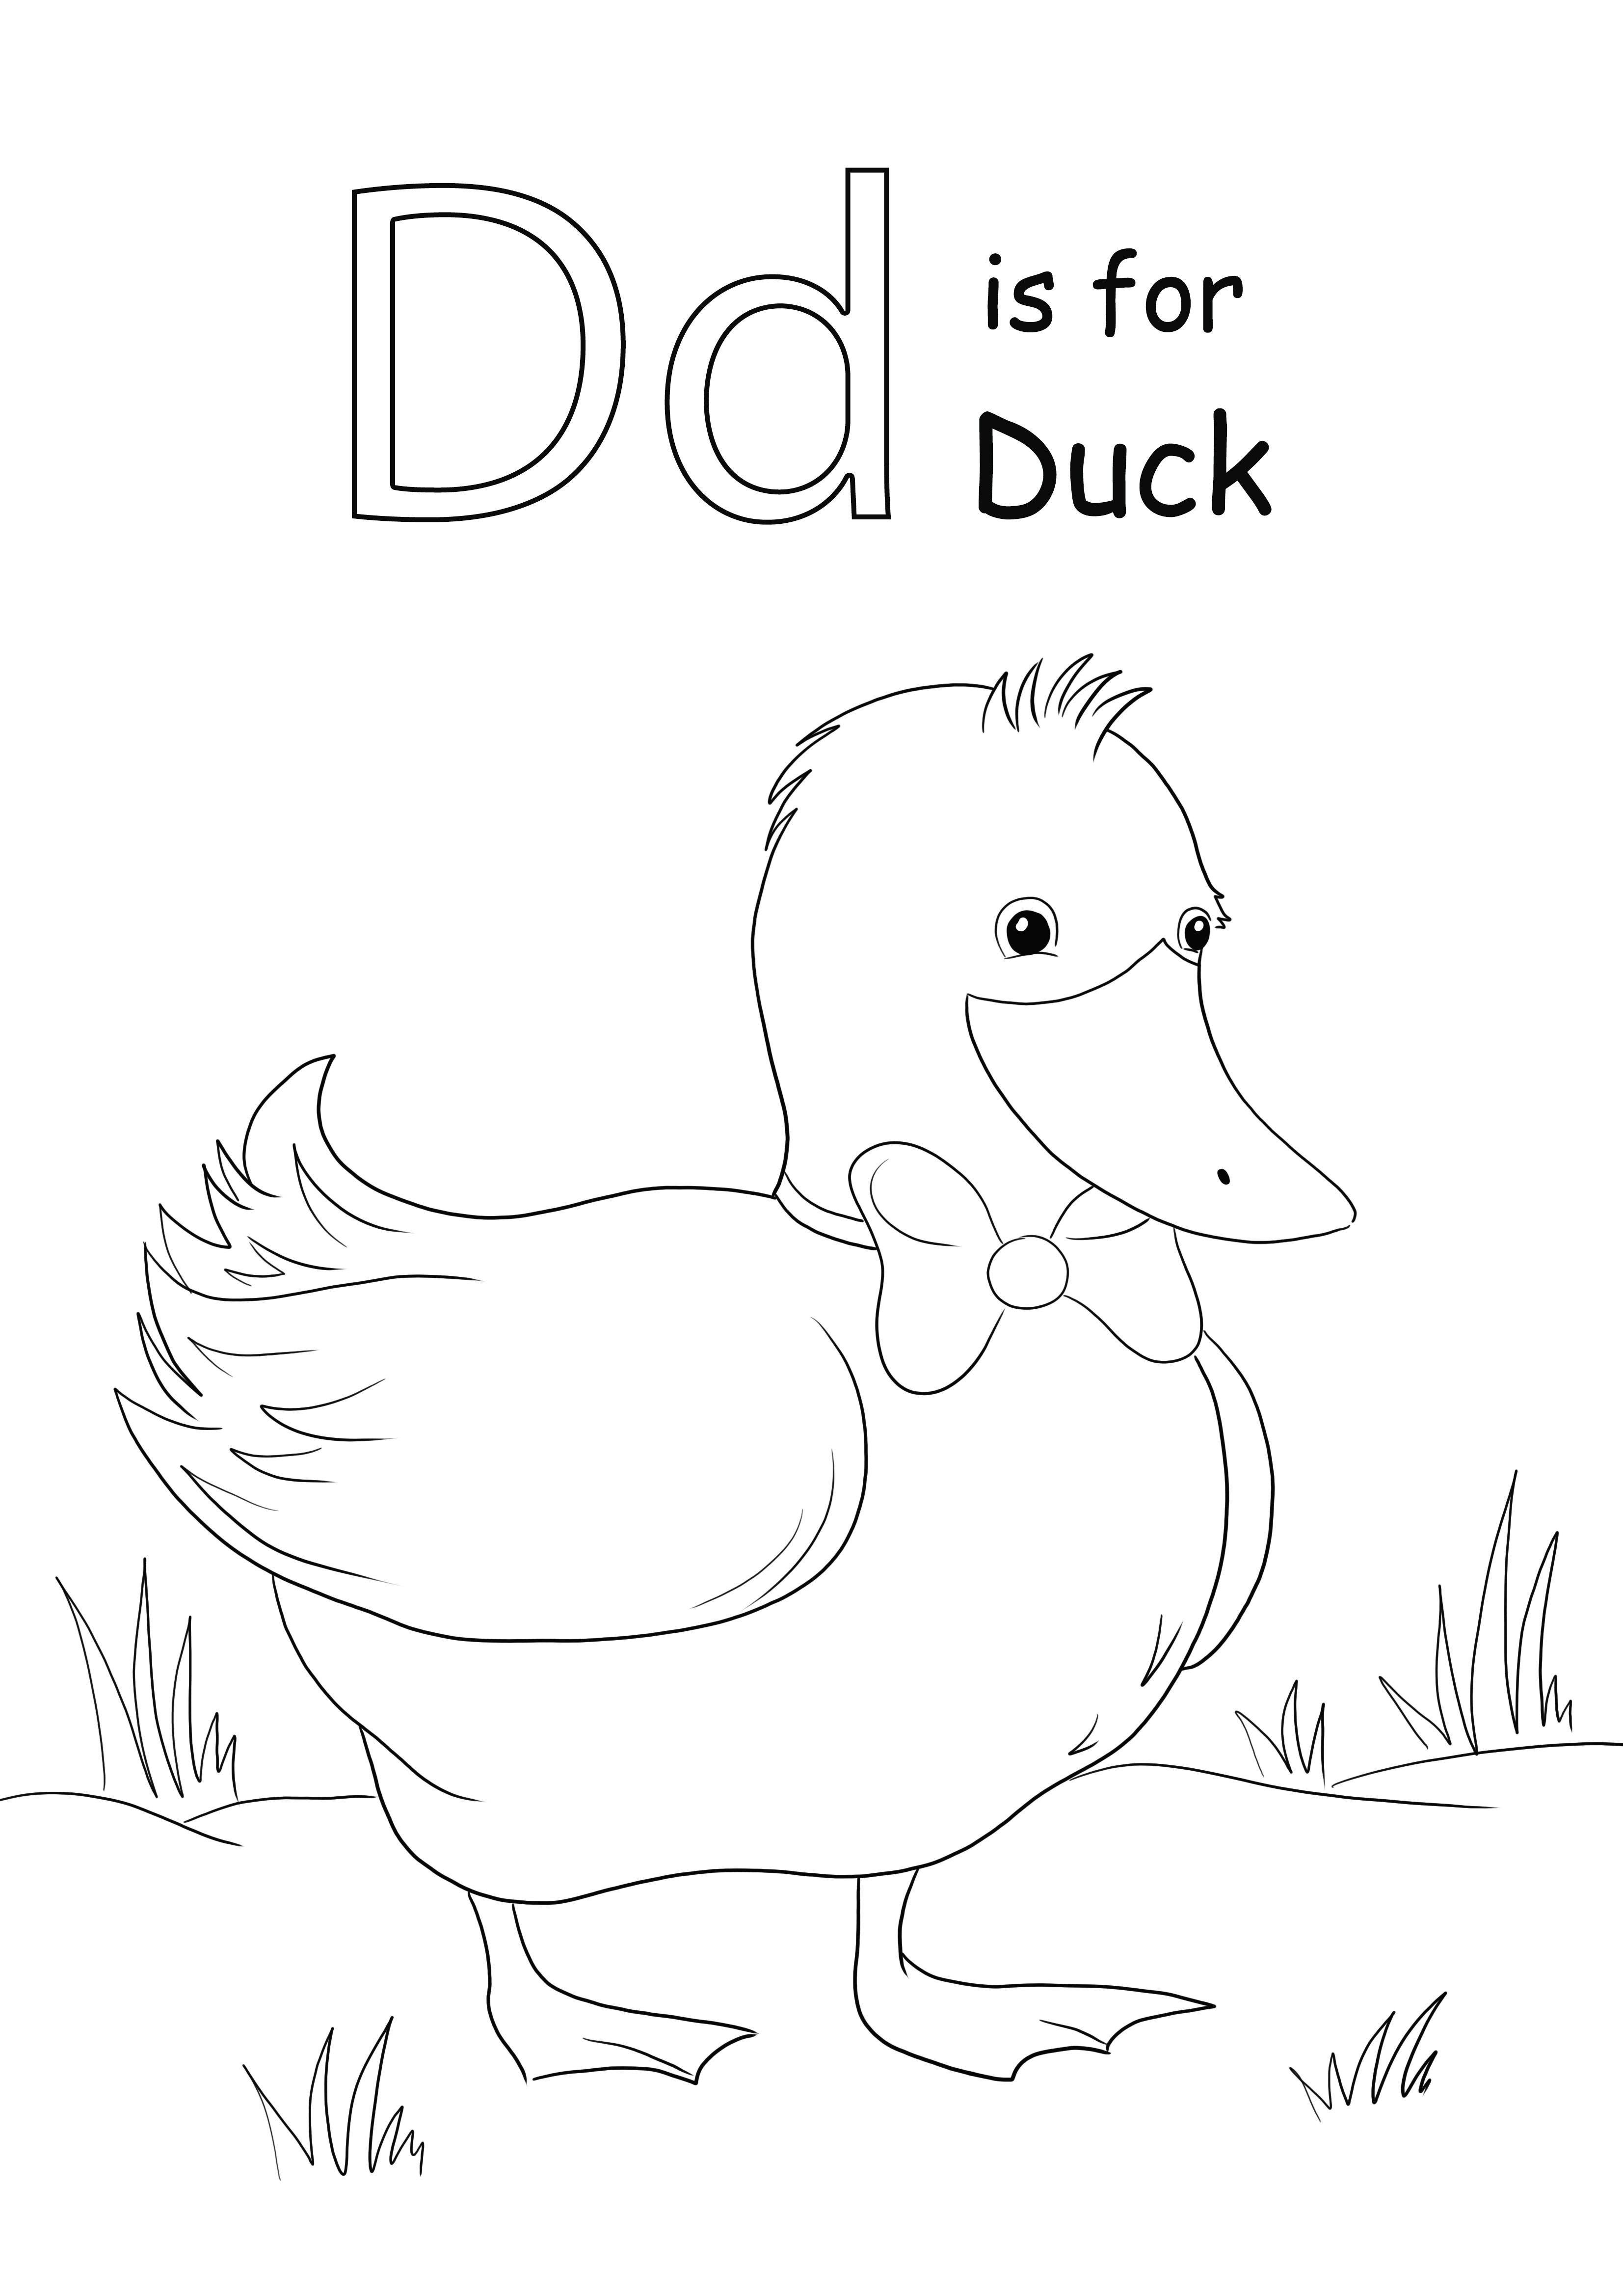 D-kirjaimen ilmainen tulostus on tarkoitettu Duck-värityskuvalle, jonka lapset voivat oppia helposti